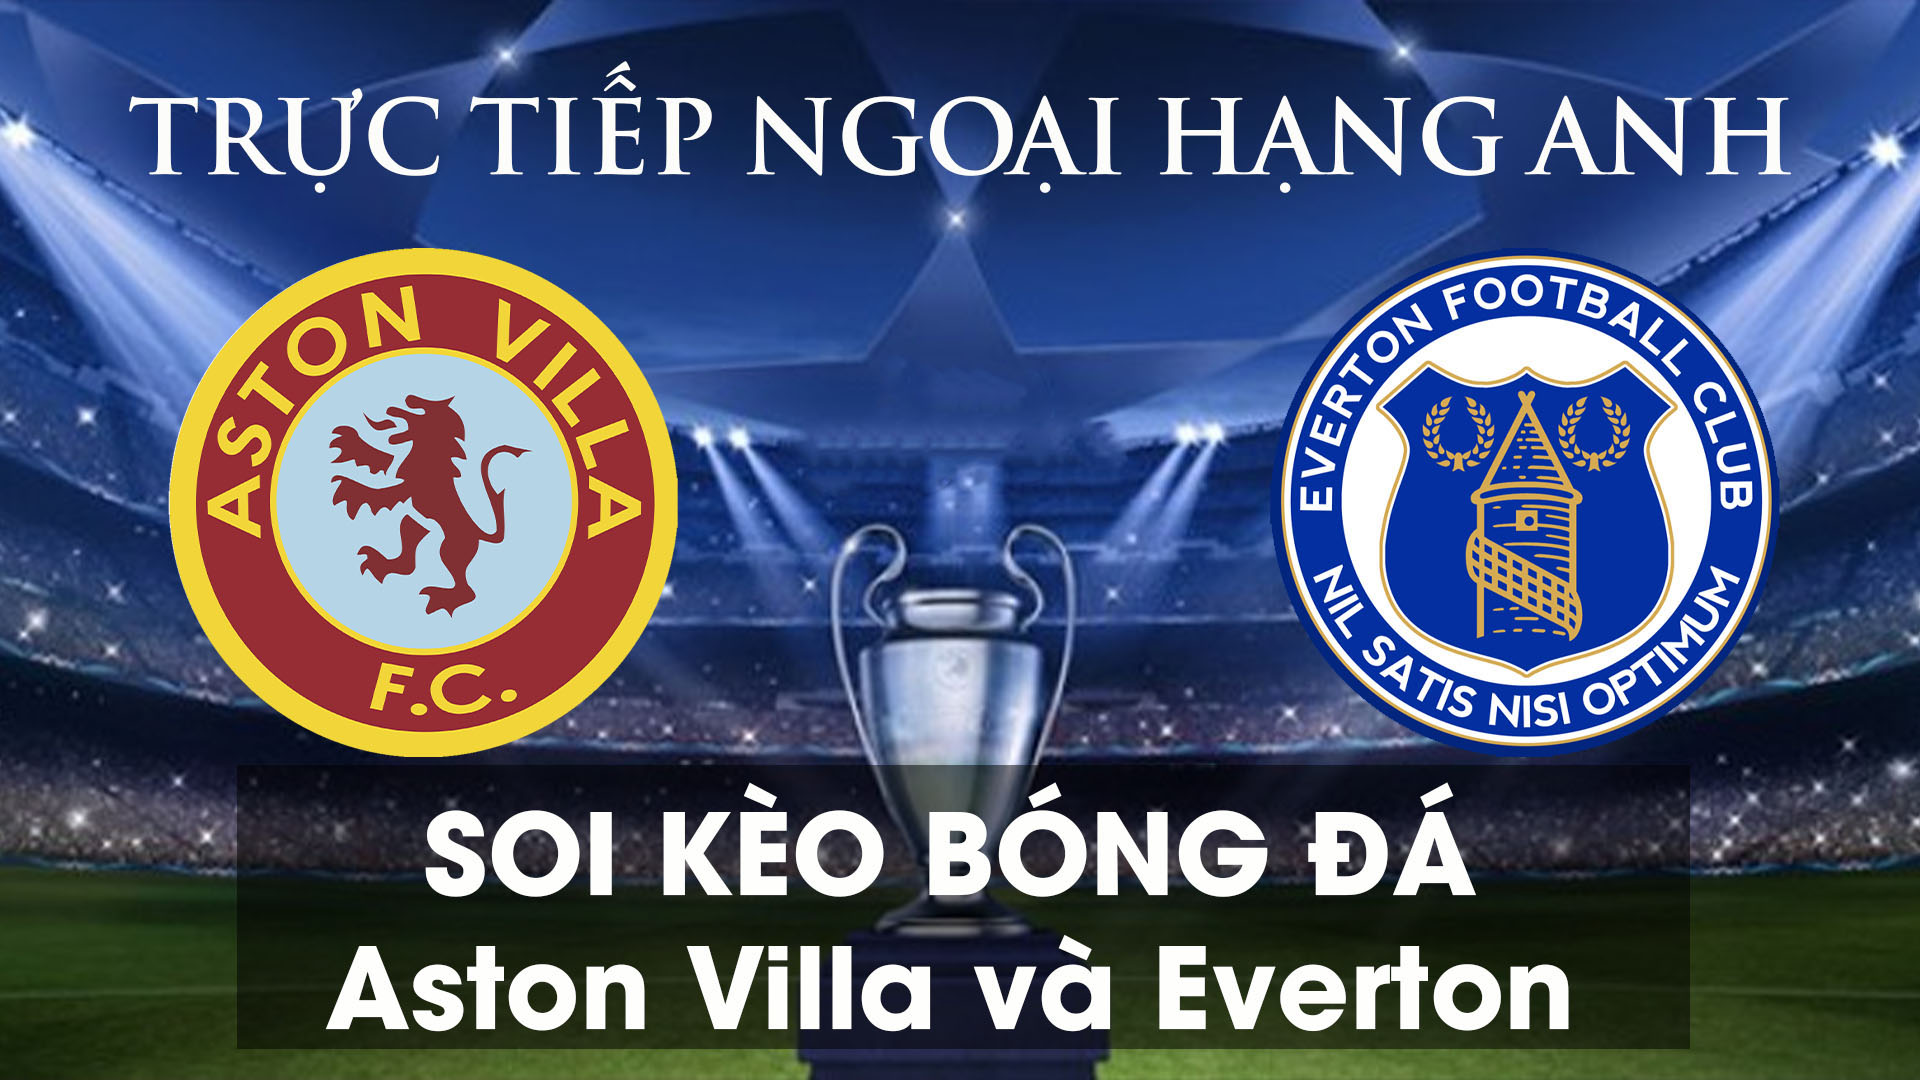 Soi kèo bóng đá giữa Aston Villa và Everton 01